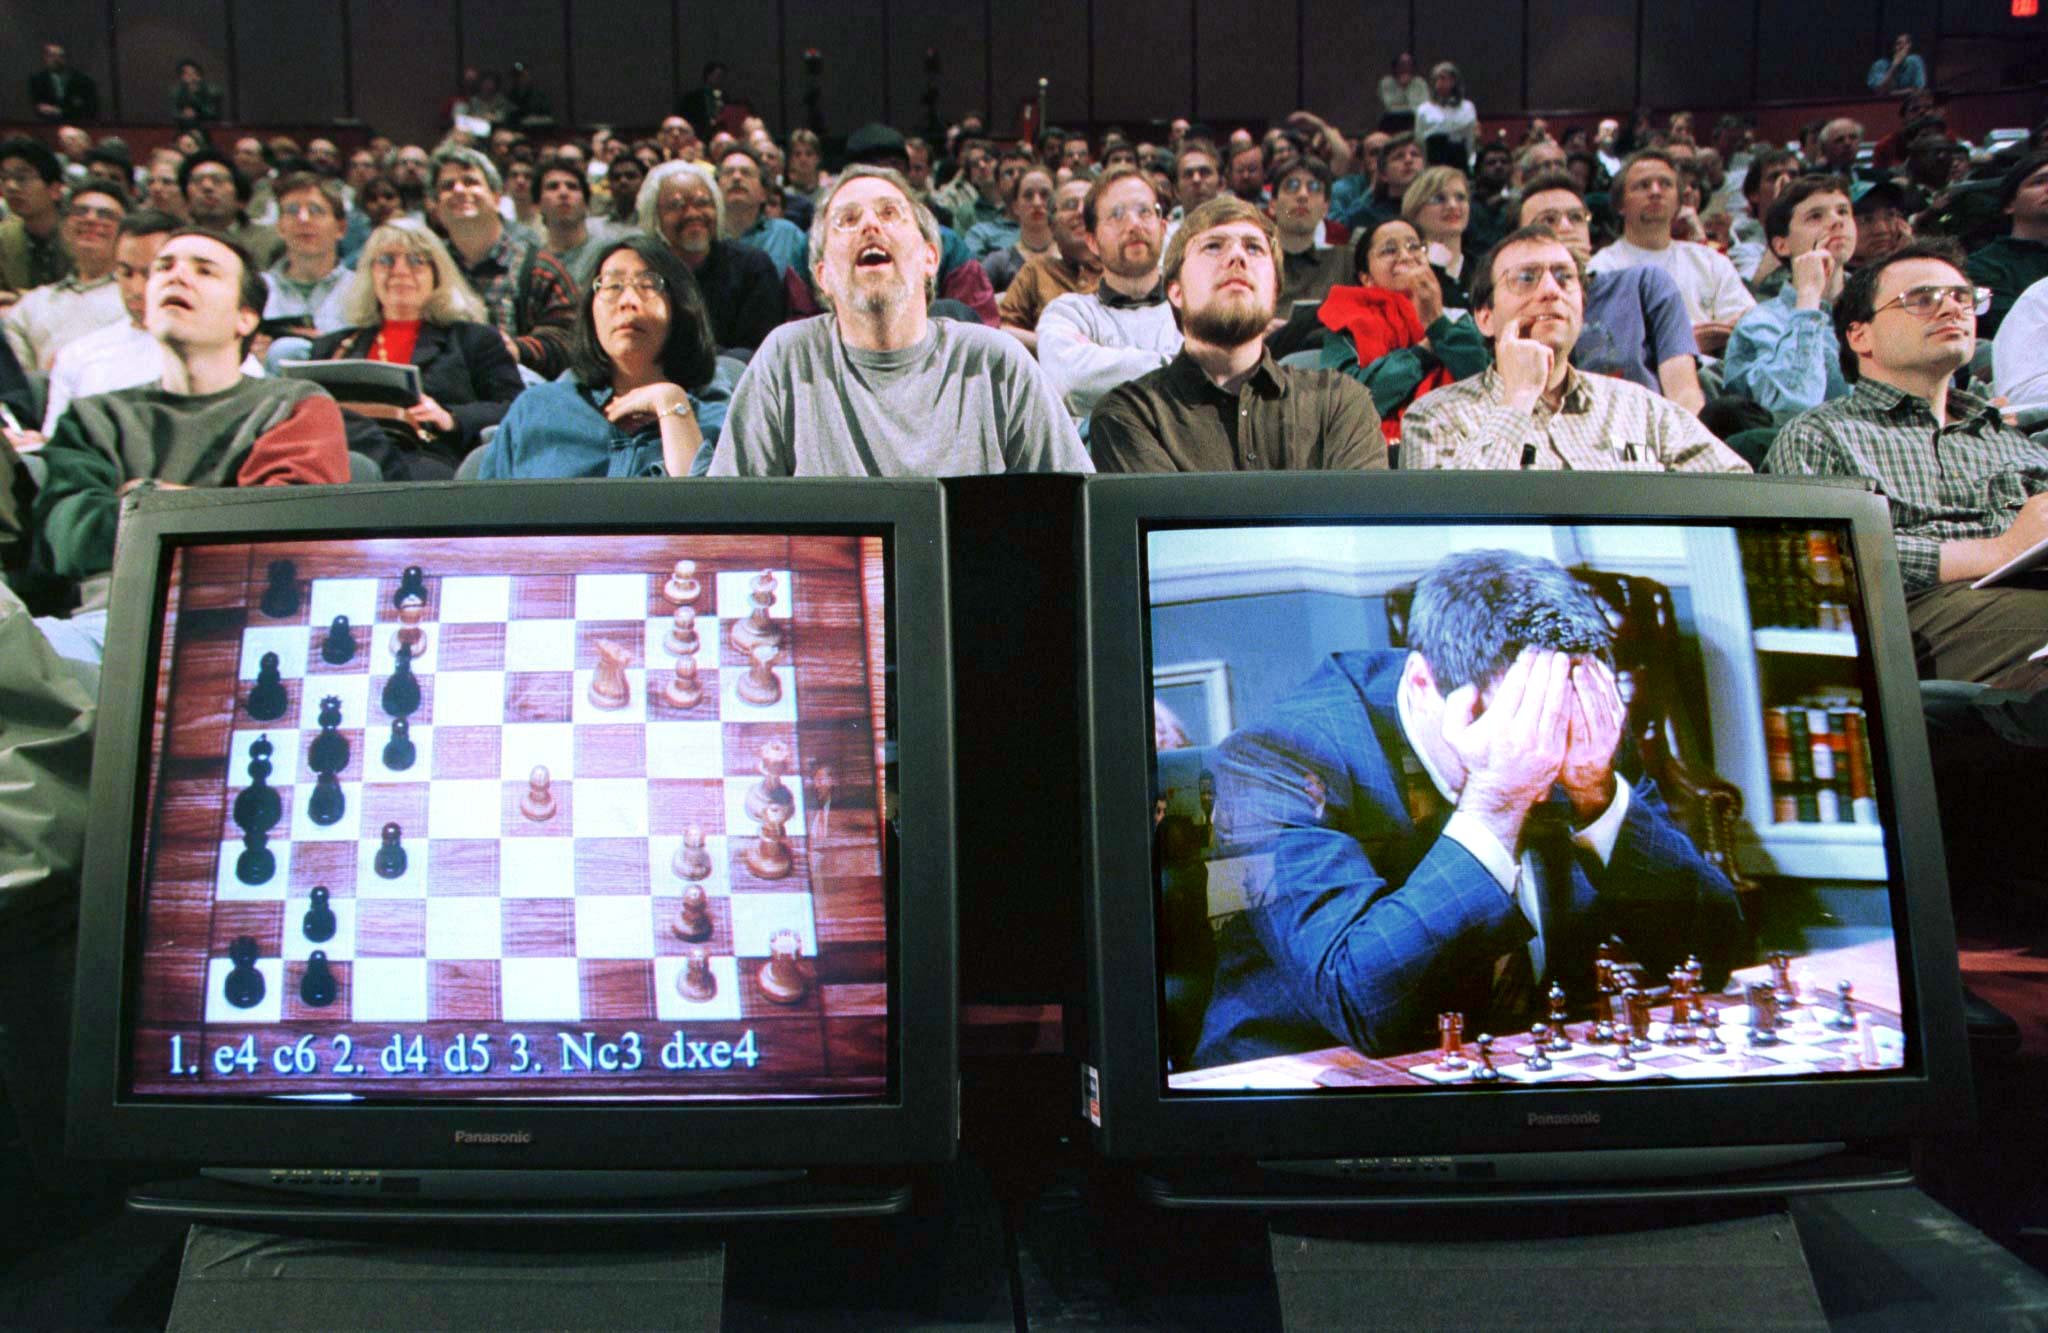 Desrotulando - Esta frase é do campeão mundial de xadrez Garry Kasparov,  que em 1997, sob os olhos atentos do mundo inteiro, foi derrotado pelo  supercomputador IBM Deep Blue. Este foi um